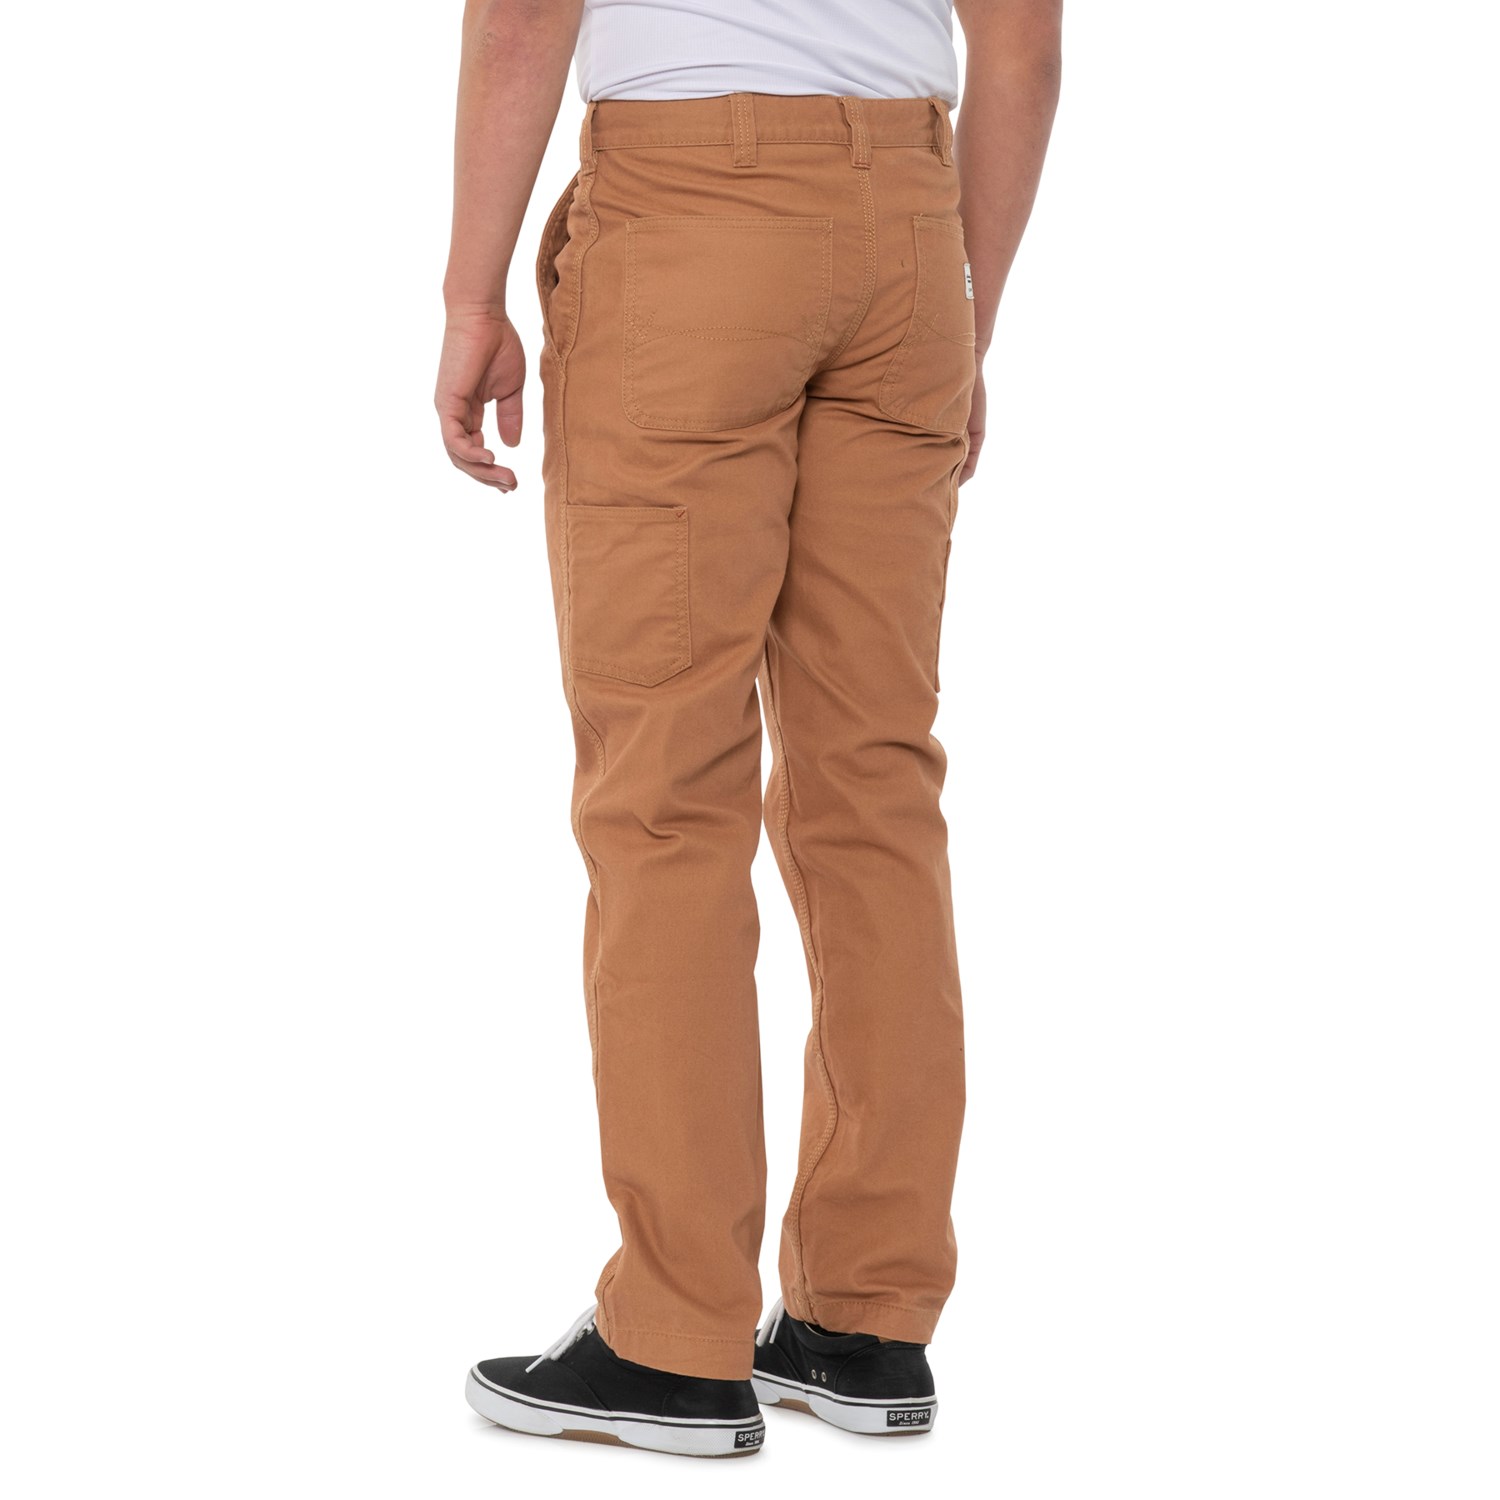 Eddie Bauer Workwear Duck Carpenter Pants (For Men) - Save 60%